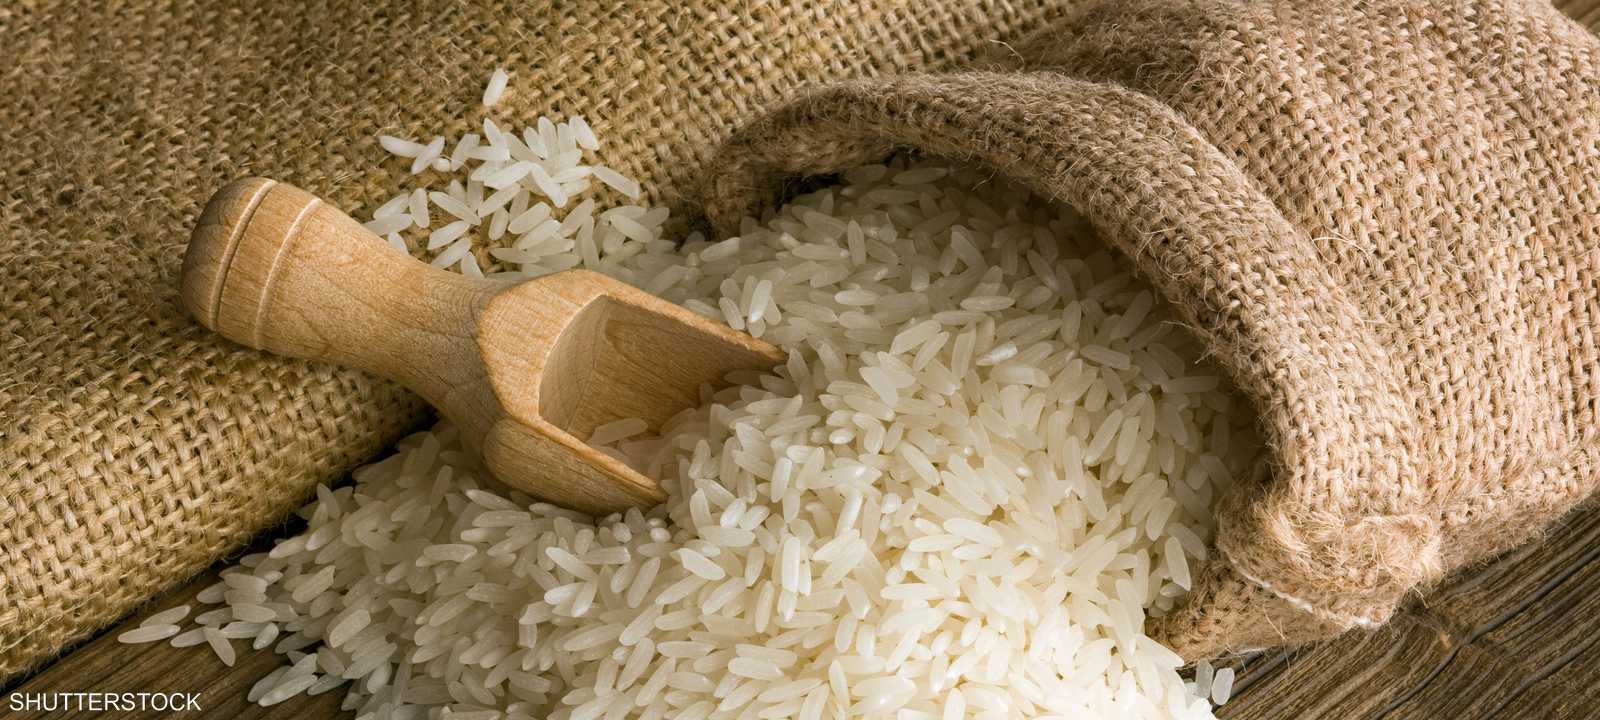 أسعار الأرز